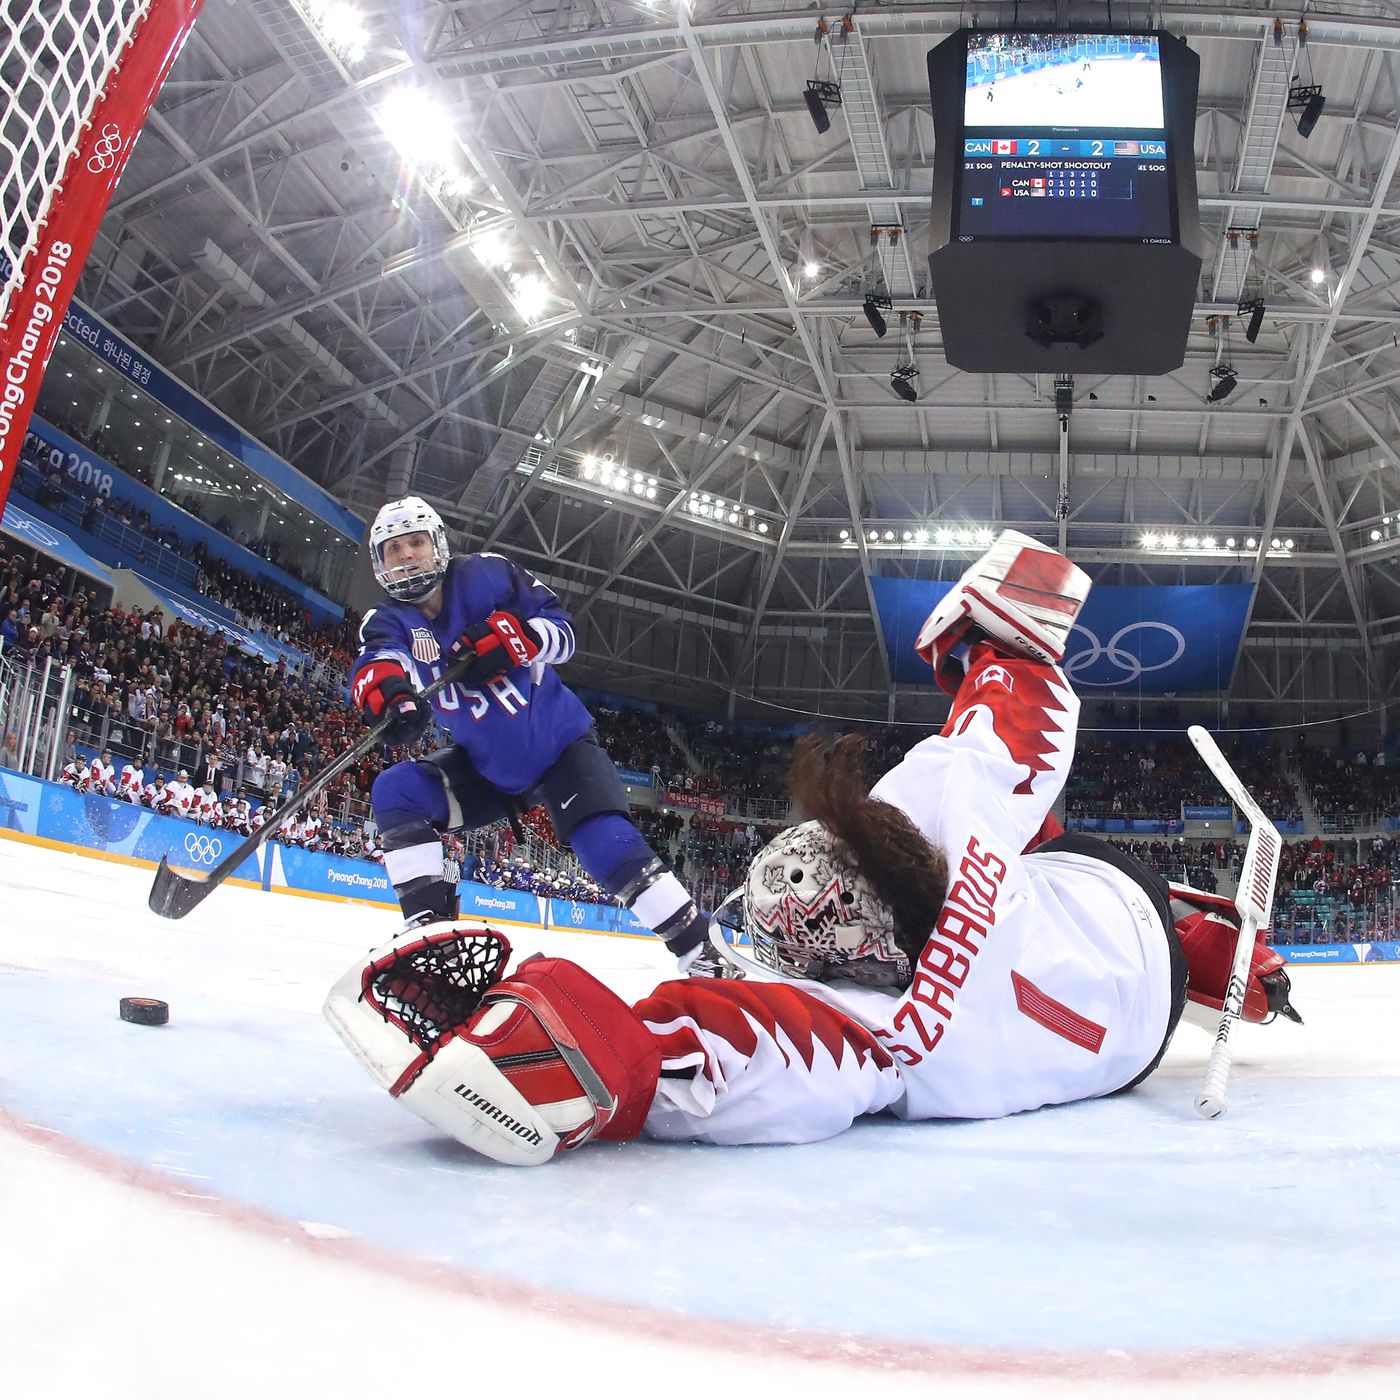 USA vs. Canada, 2018 Olympic women's hockey: Final score and recap